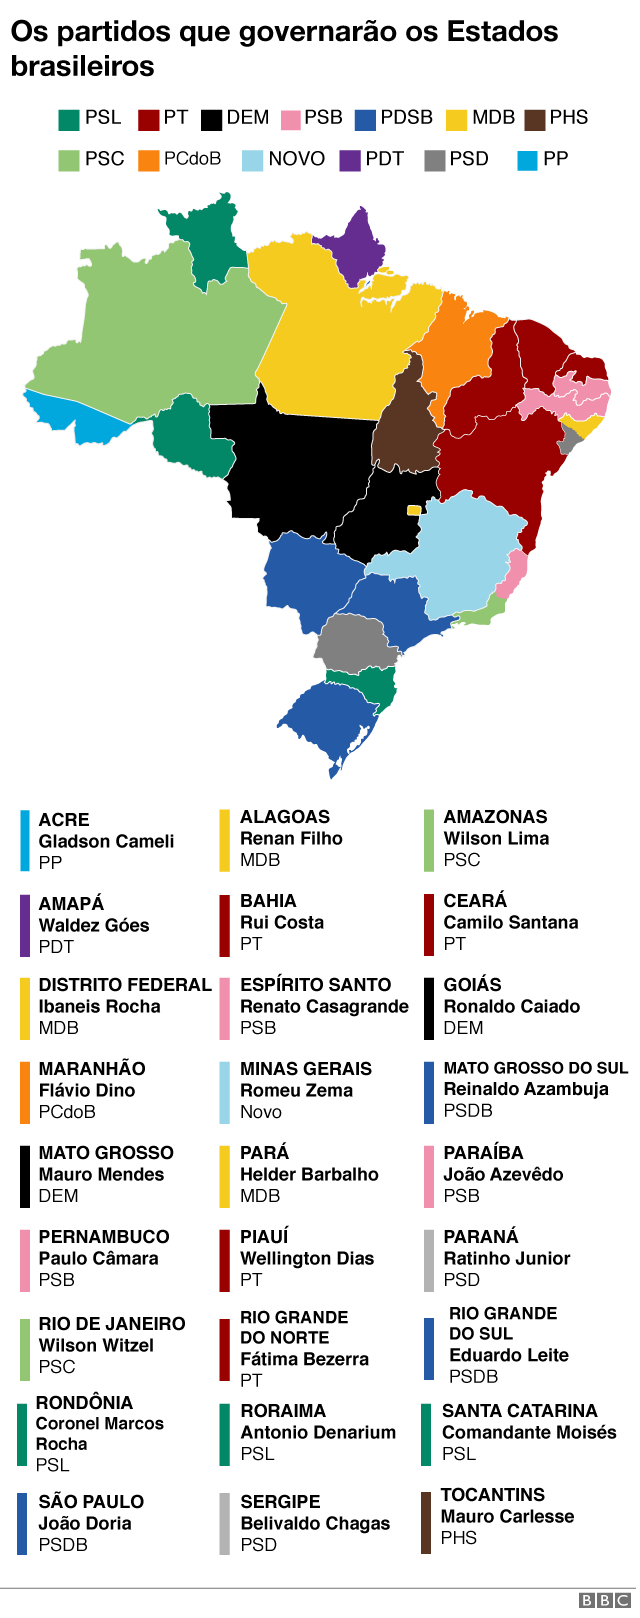 Gráfico com mapa do Brasil e partidos que governarão cada Estado